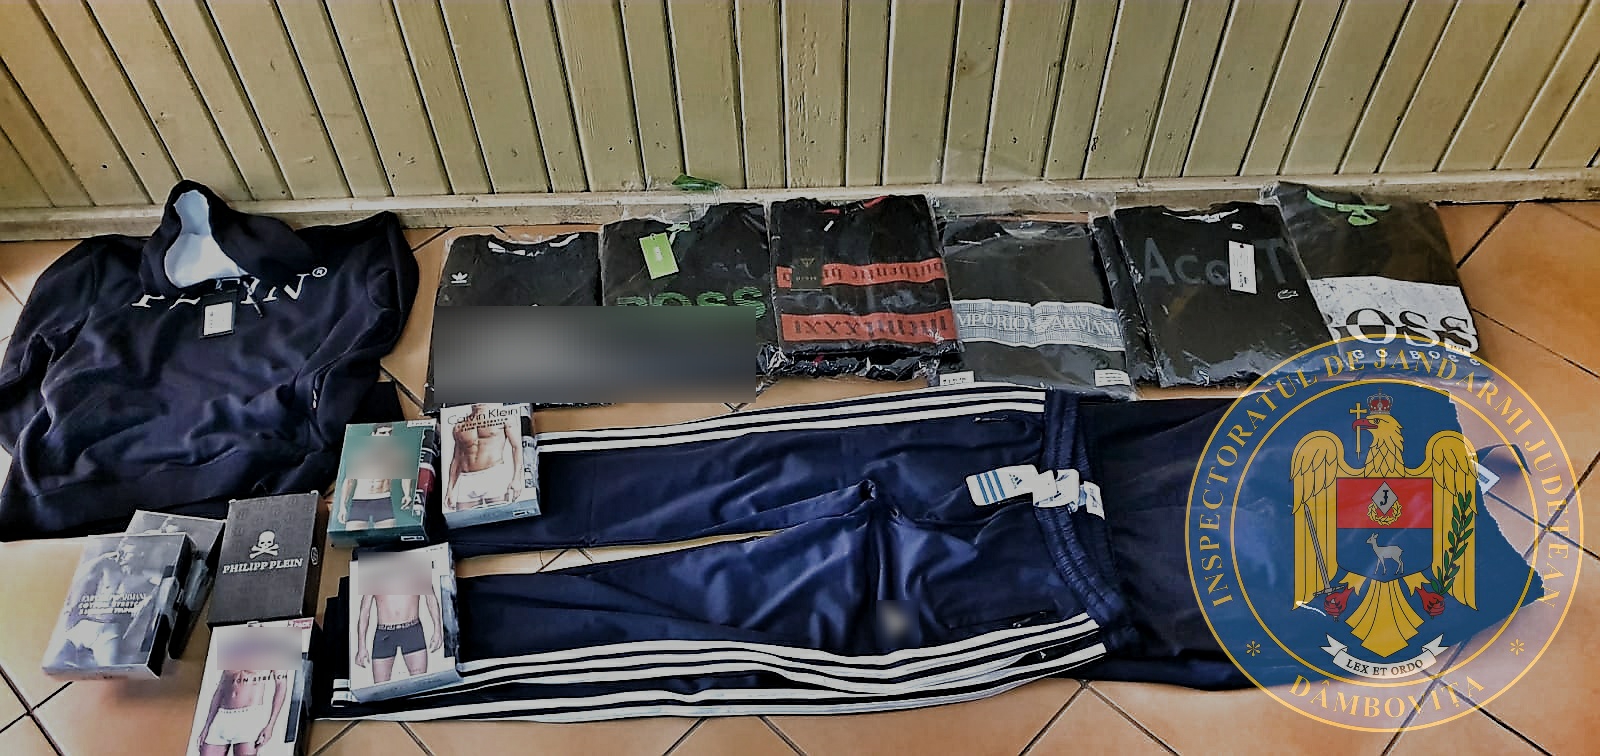 Produse contrafăcute, confiscate de jandarmi, la Târgovişte